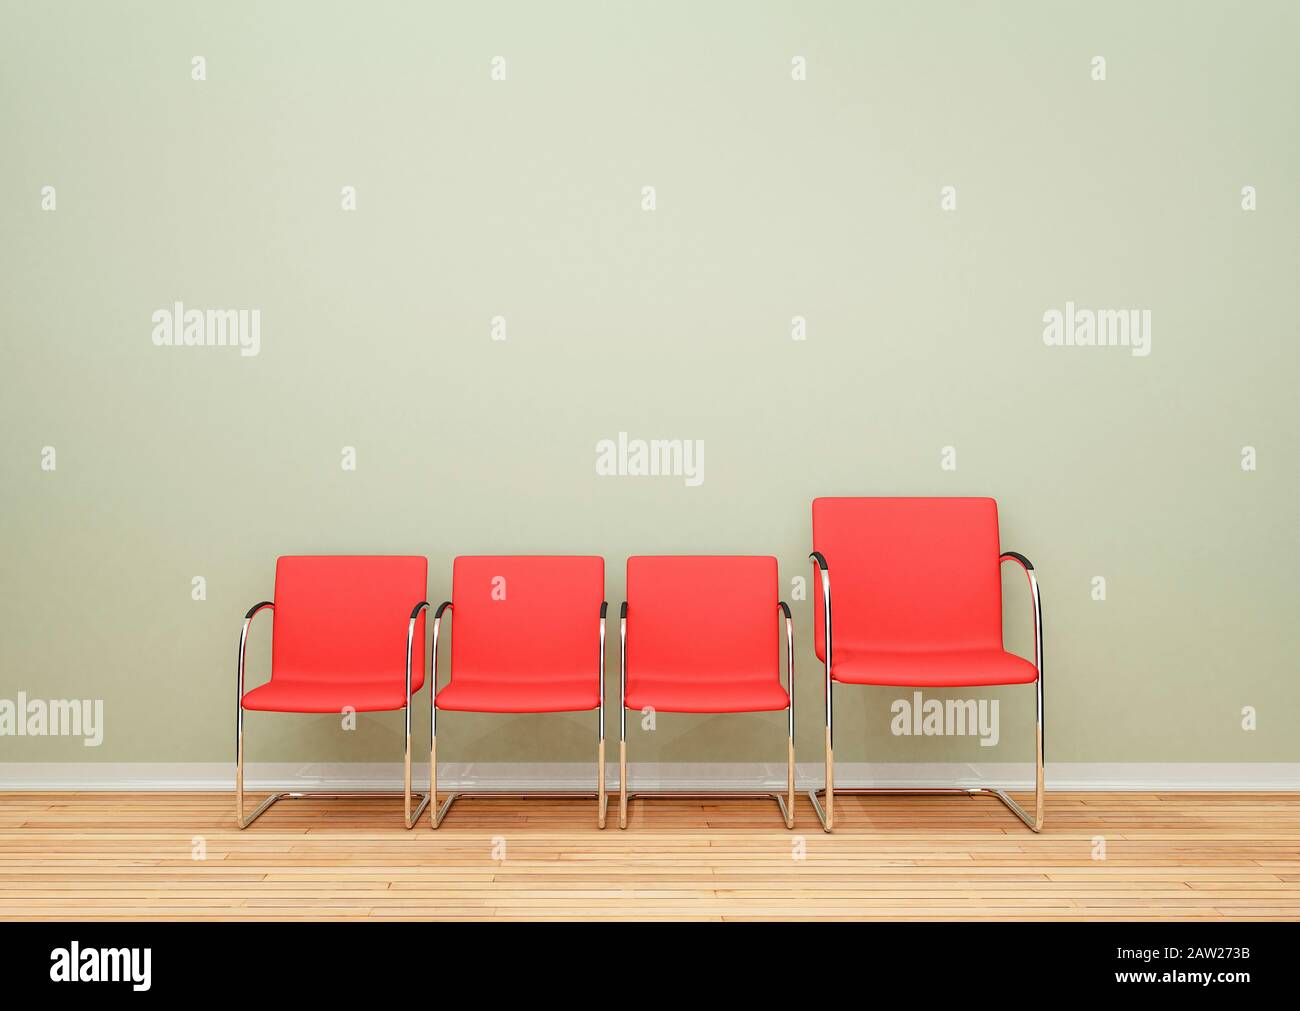 Tres sillas más pequeñas y una silla más grande en una fila en una habitación vacía, concepto de diferencia Foto de stock